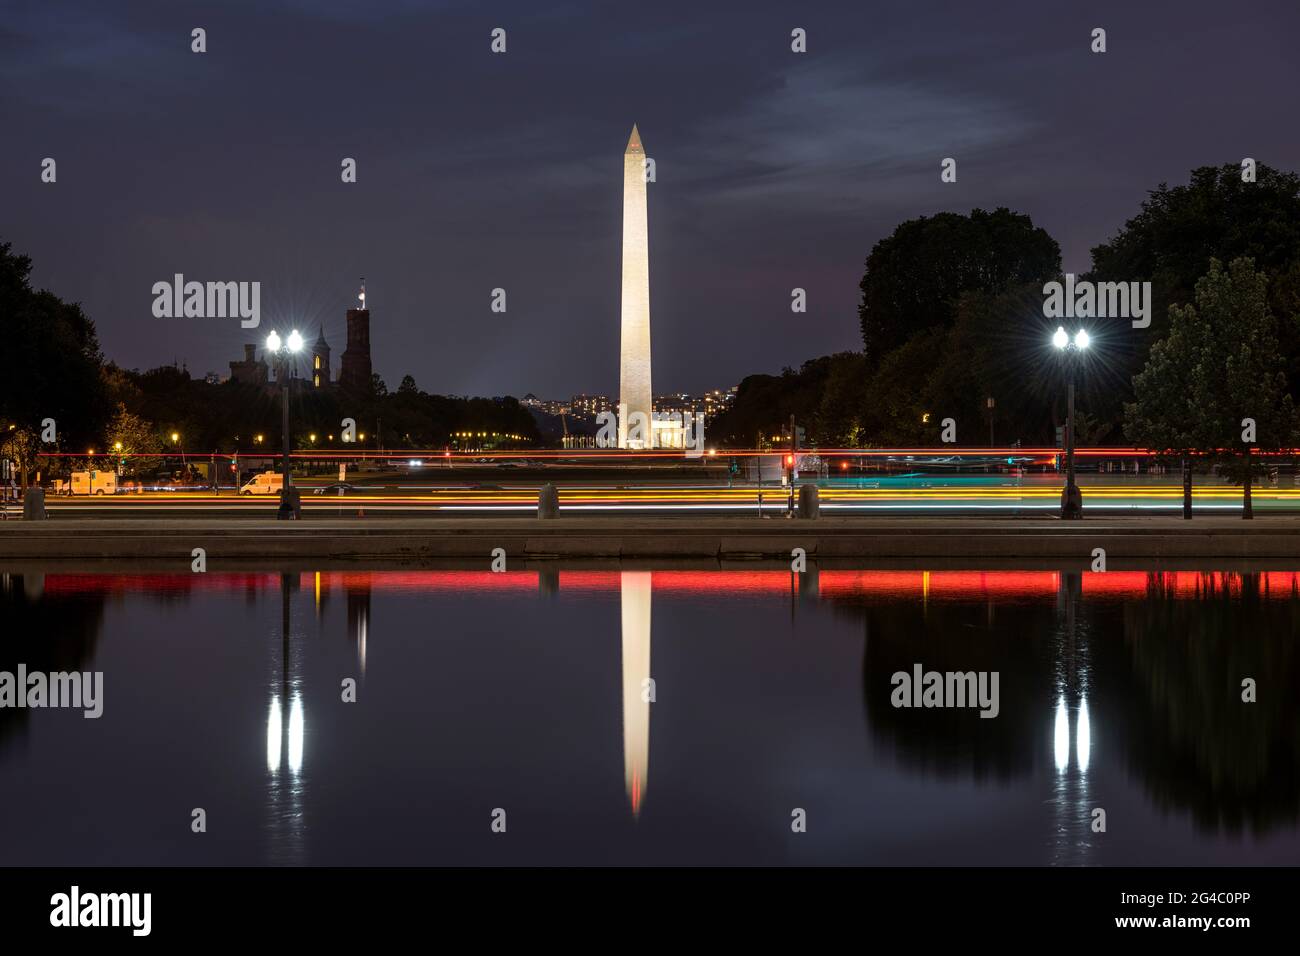 Washington Monument - UNE vue nocturne du Washington Monument se reflète dans le bassin réfléchissant du Capitole. Washington, D.C., États-Unis. Banque D'Images